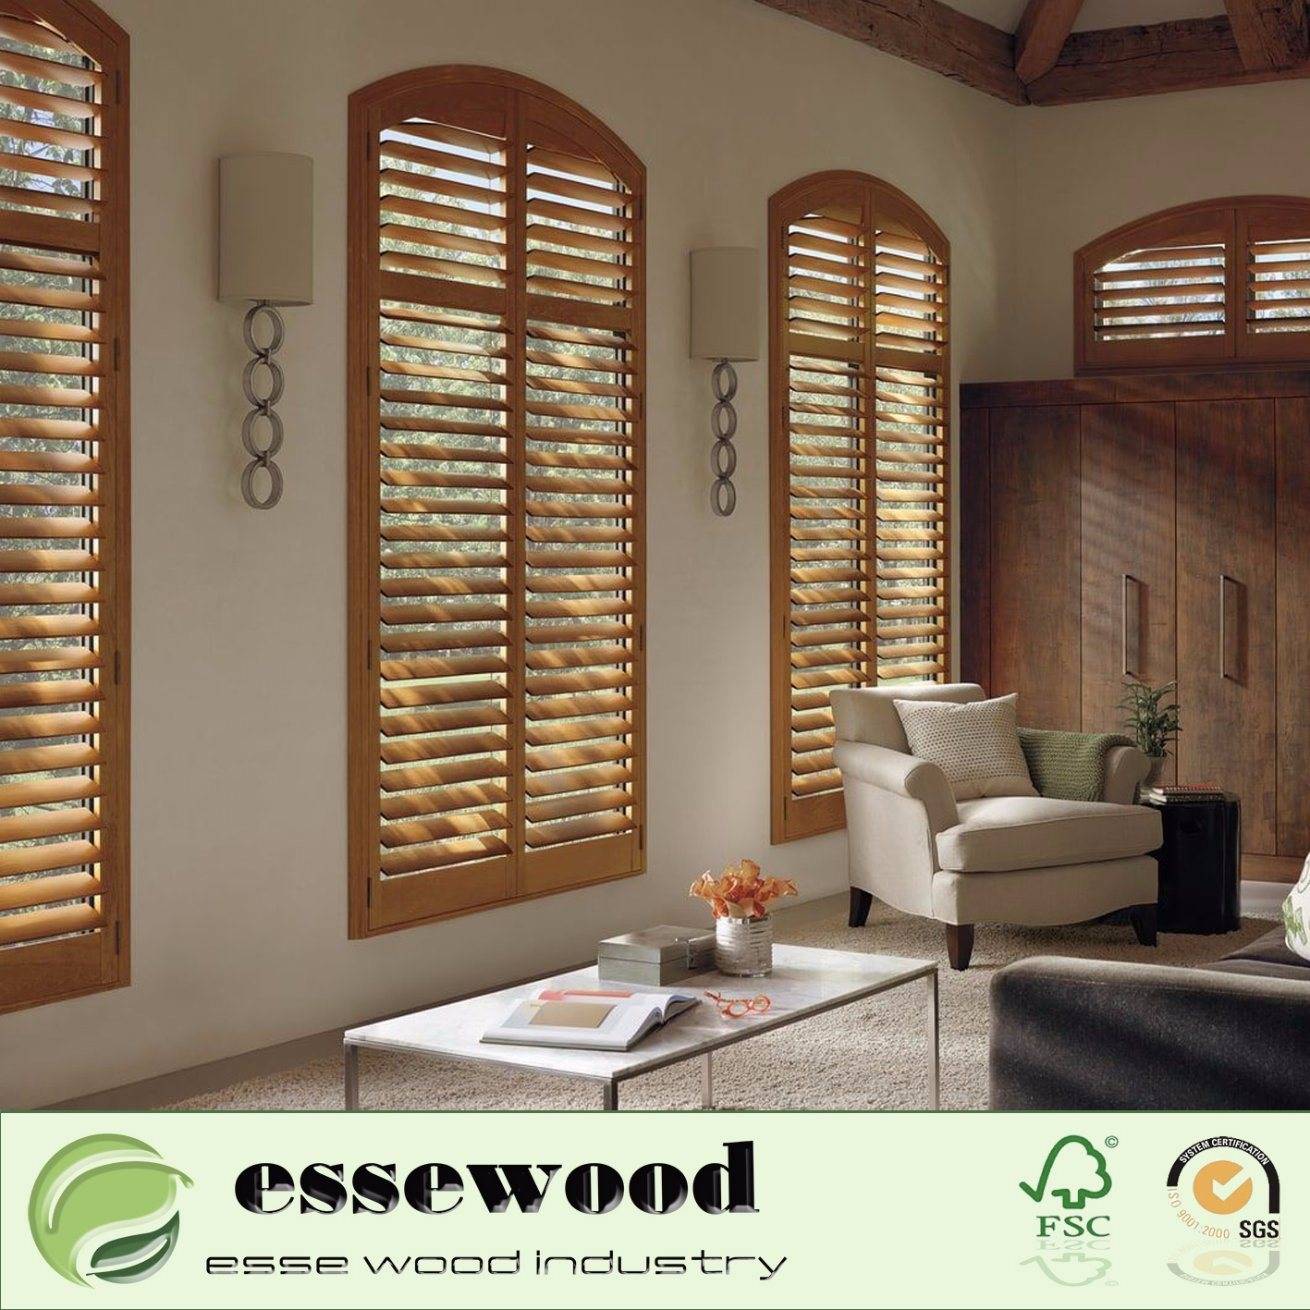 Ставни для окон на даче декоративные и защитные, внешние и внутренние, металлические, пластиковые и деревянные варианты